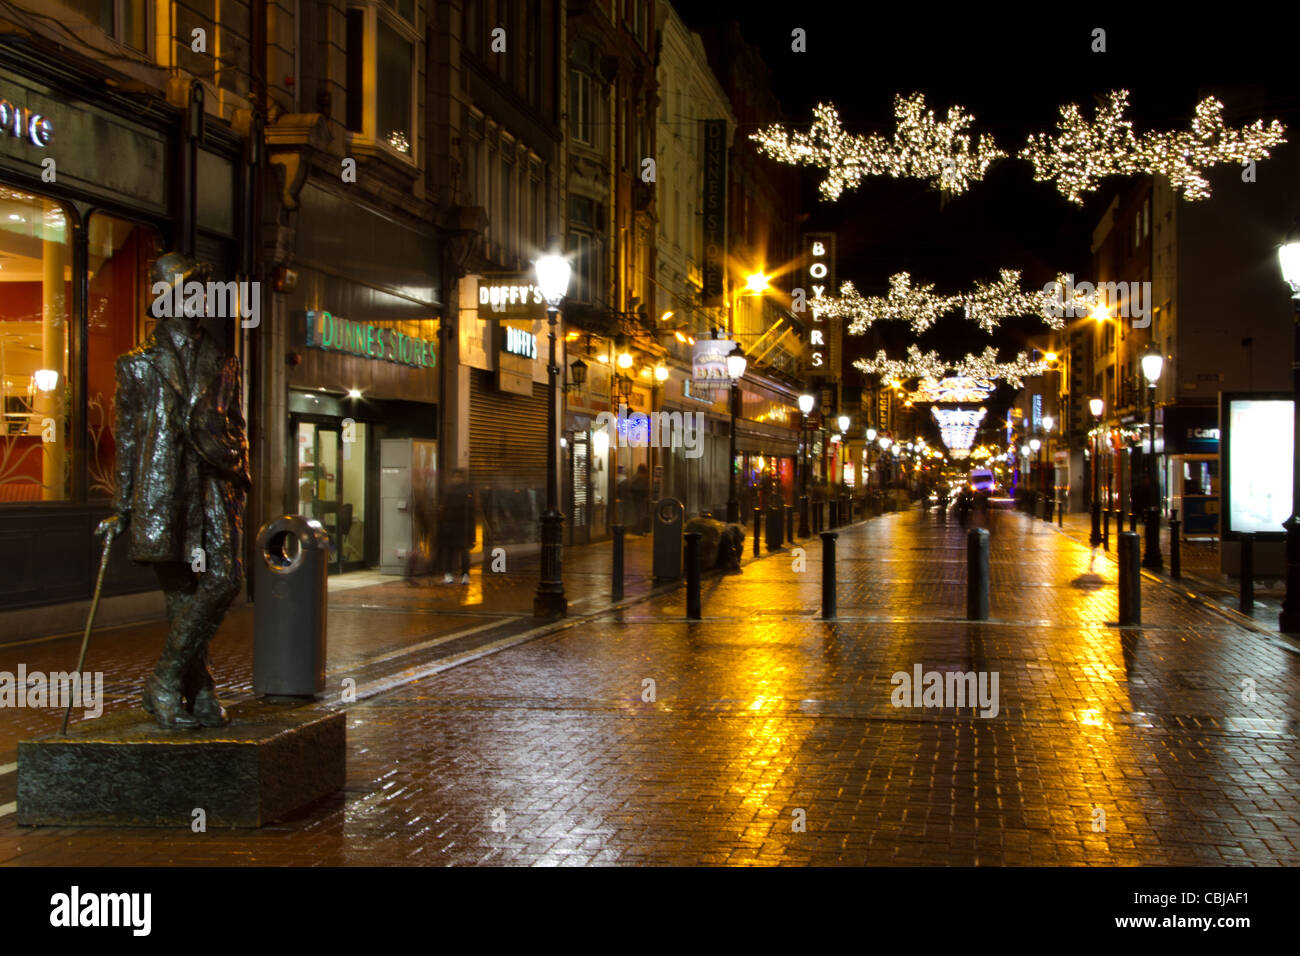 Weihnachtsdekoration hängt über Henry Street in Dublin, Irland, Baile aha Tuch, gälischen Schilder, Shopper auf der Henry Street Stockfoto